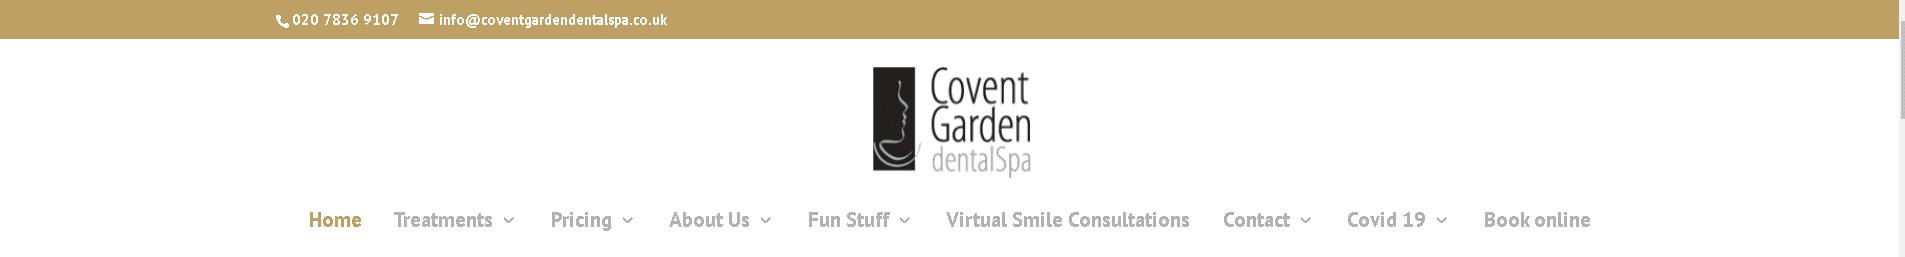 Covent Garden Dental Spa